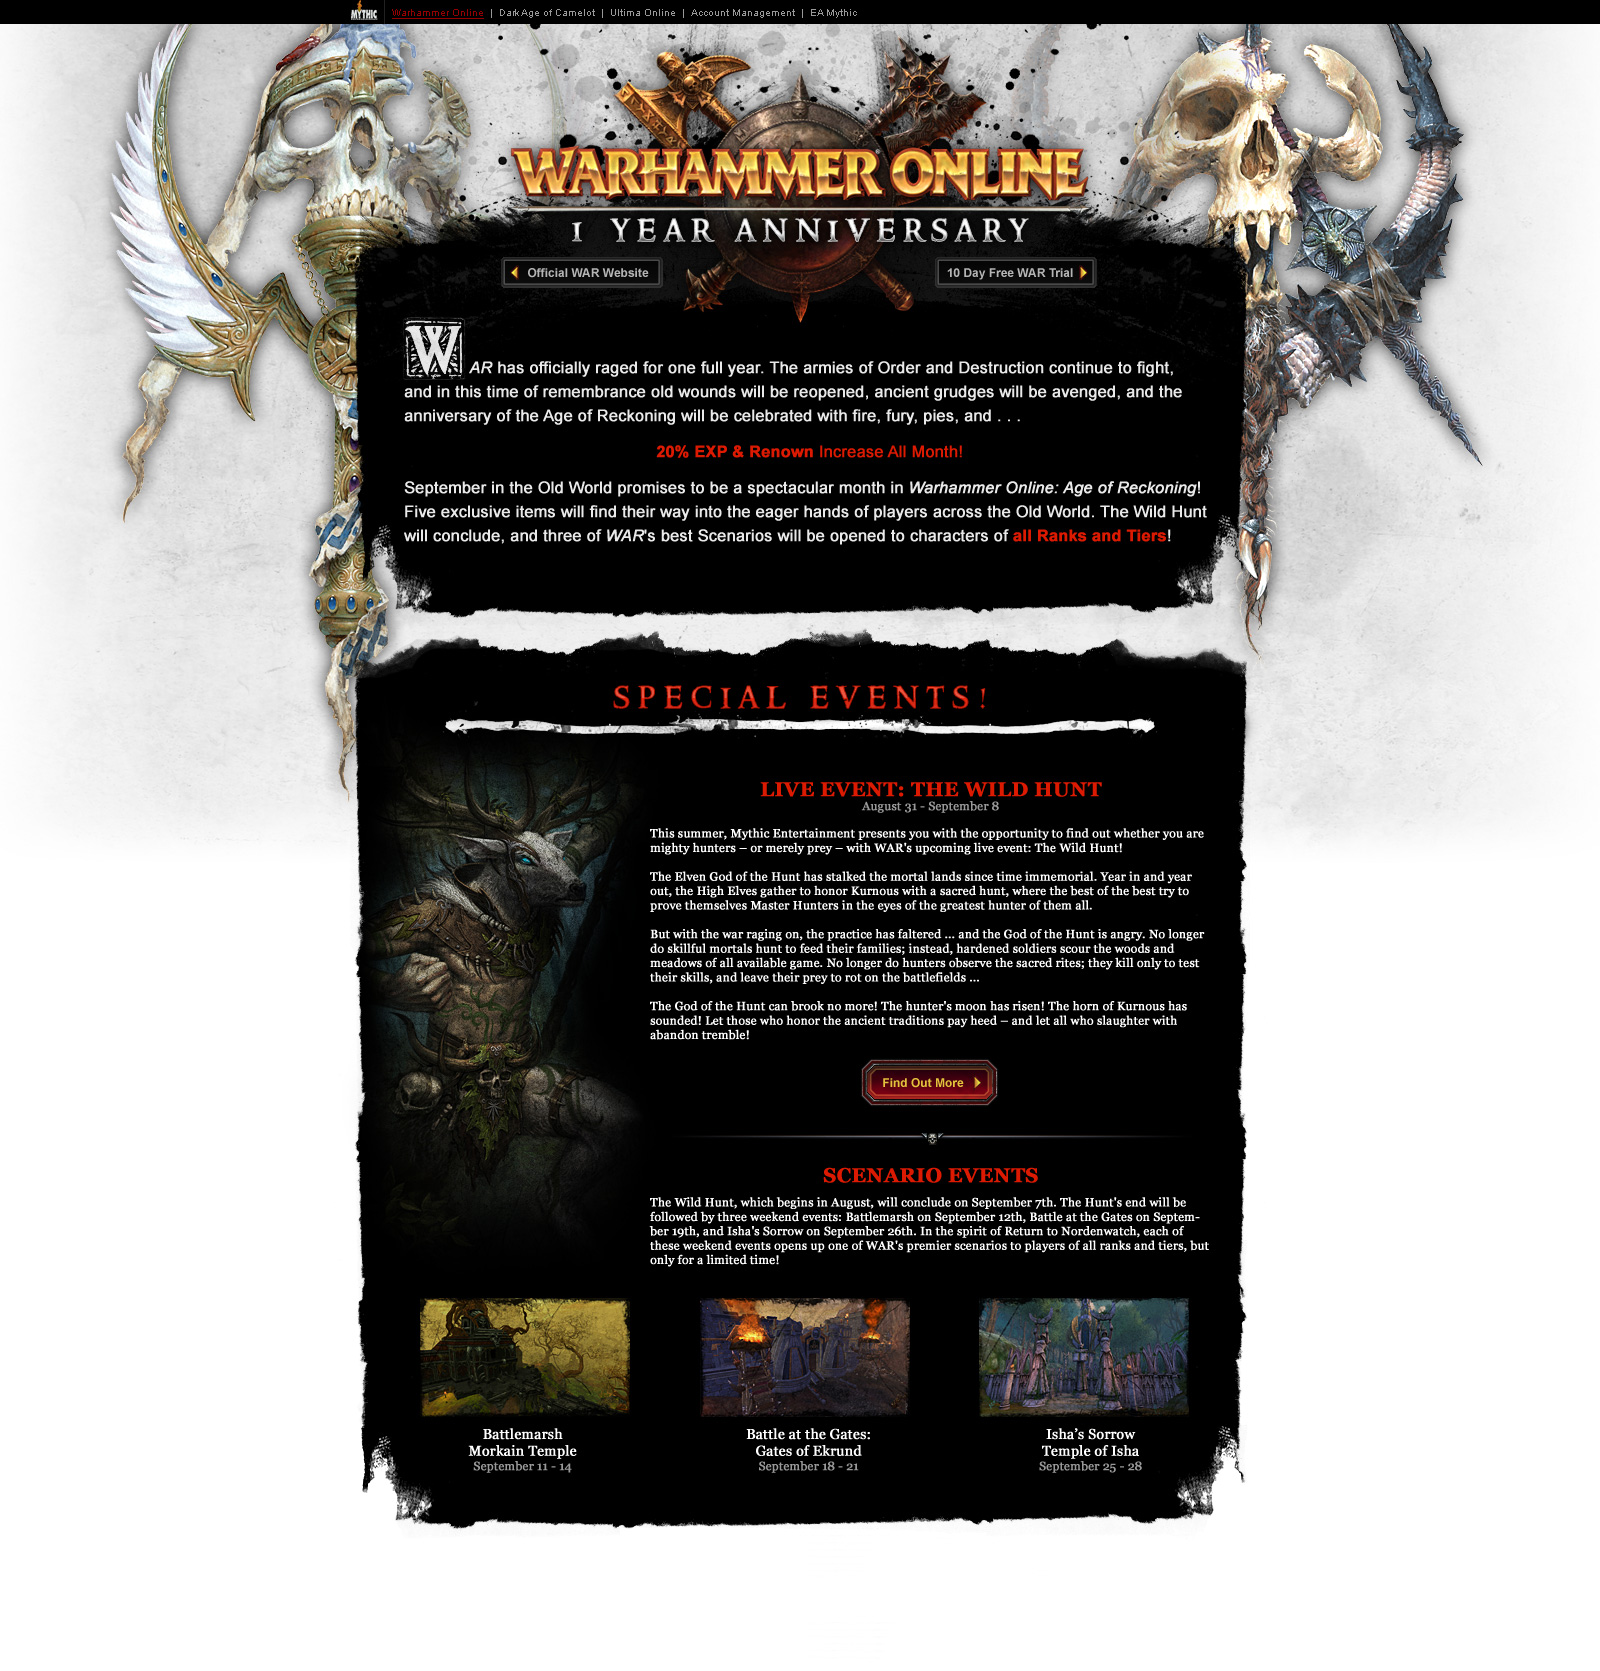 Warhammer Online - 1 Year Anniversary